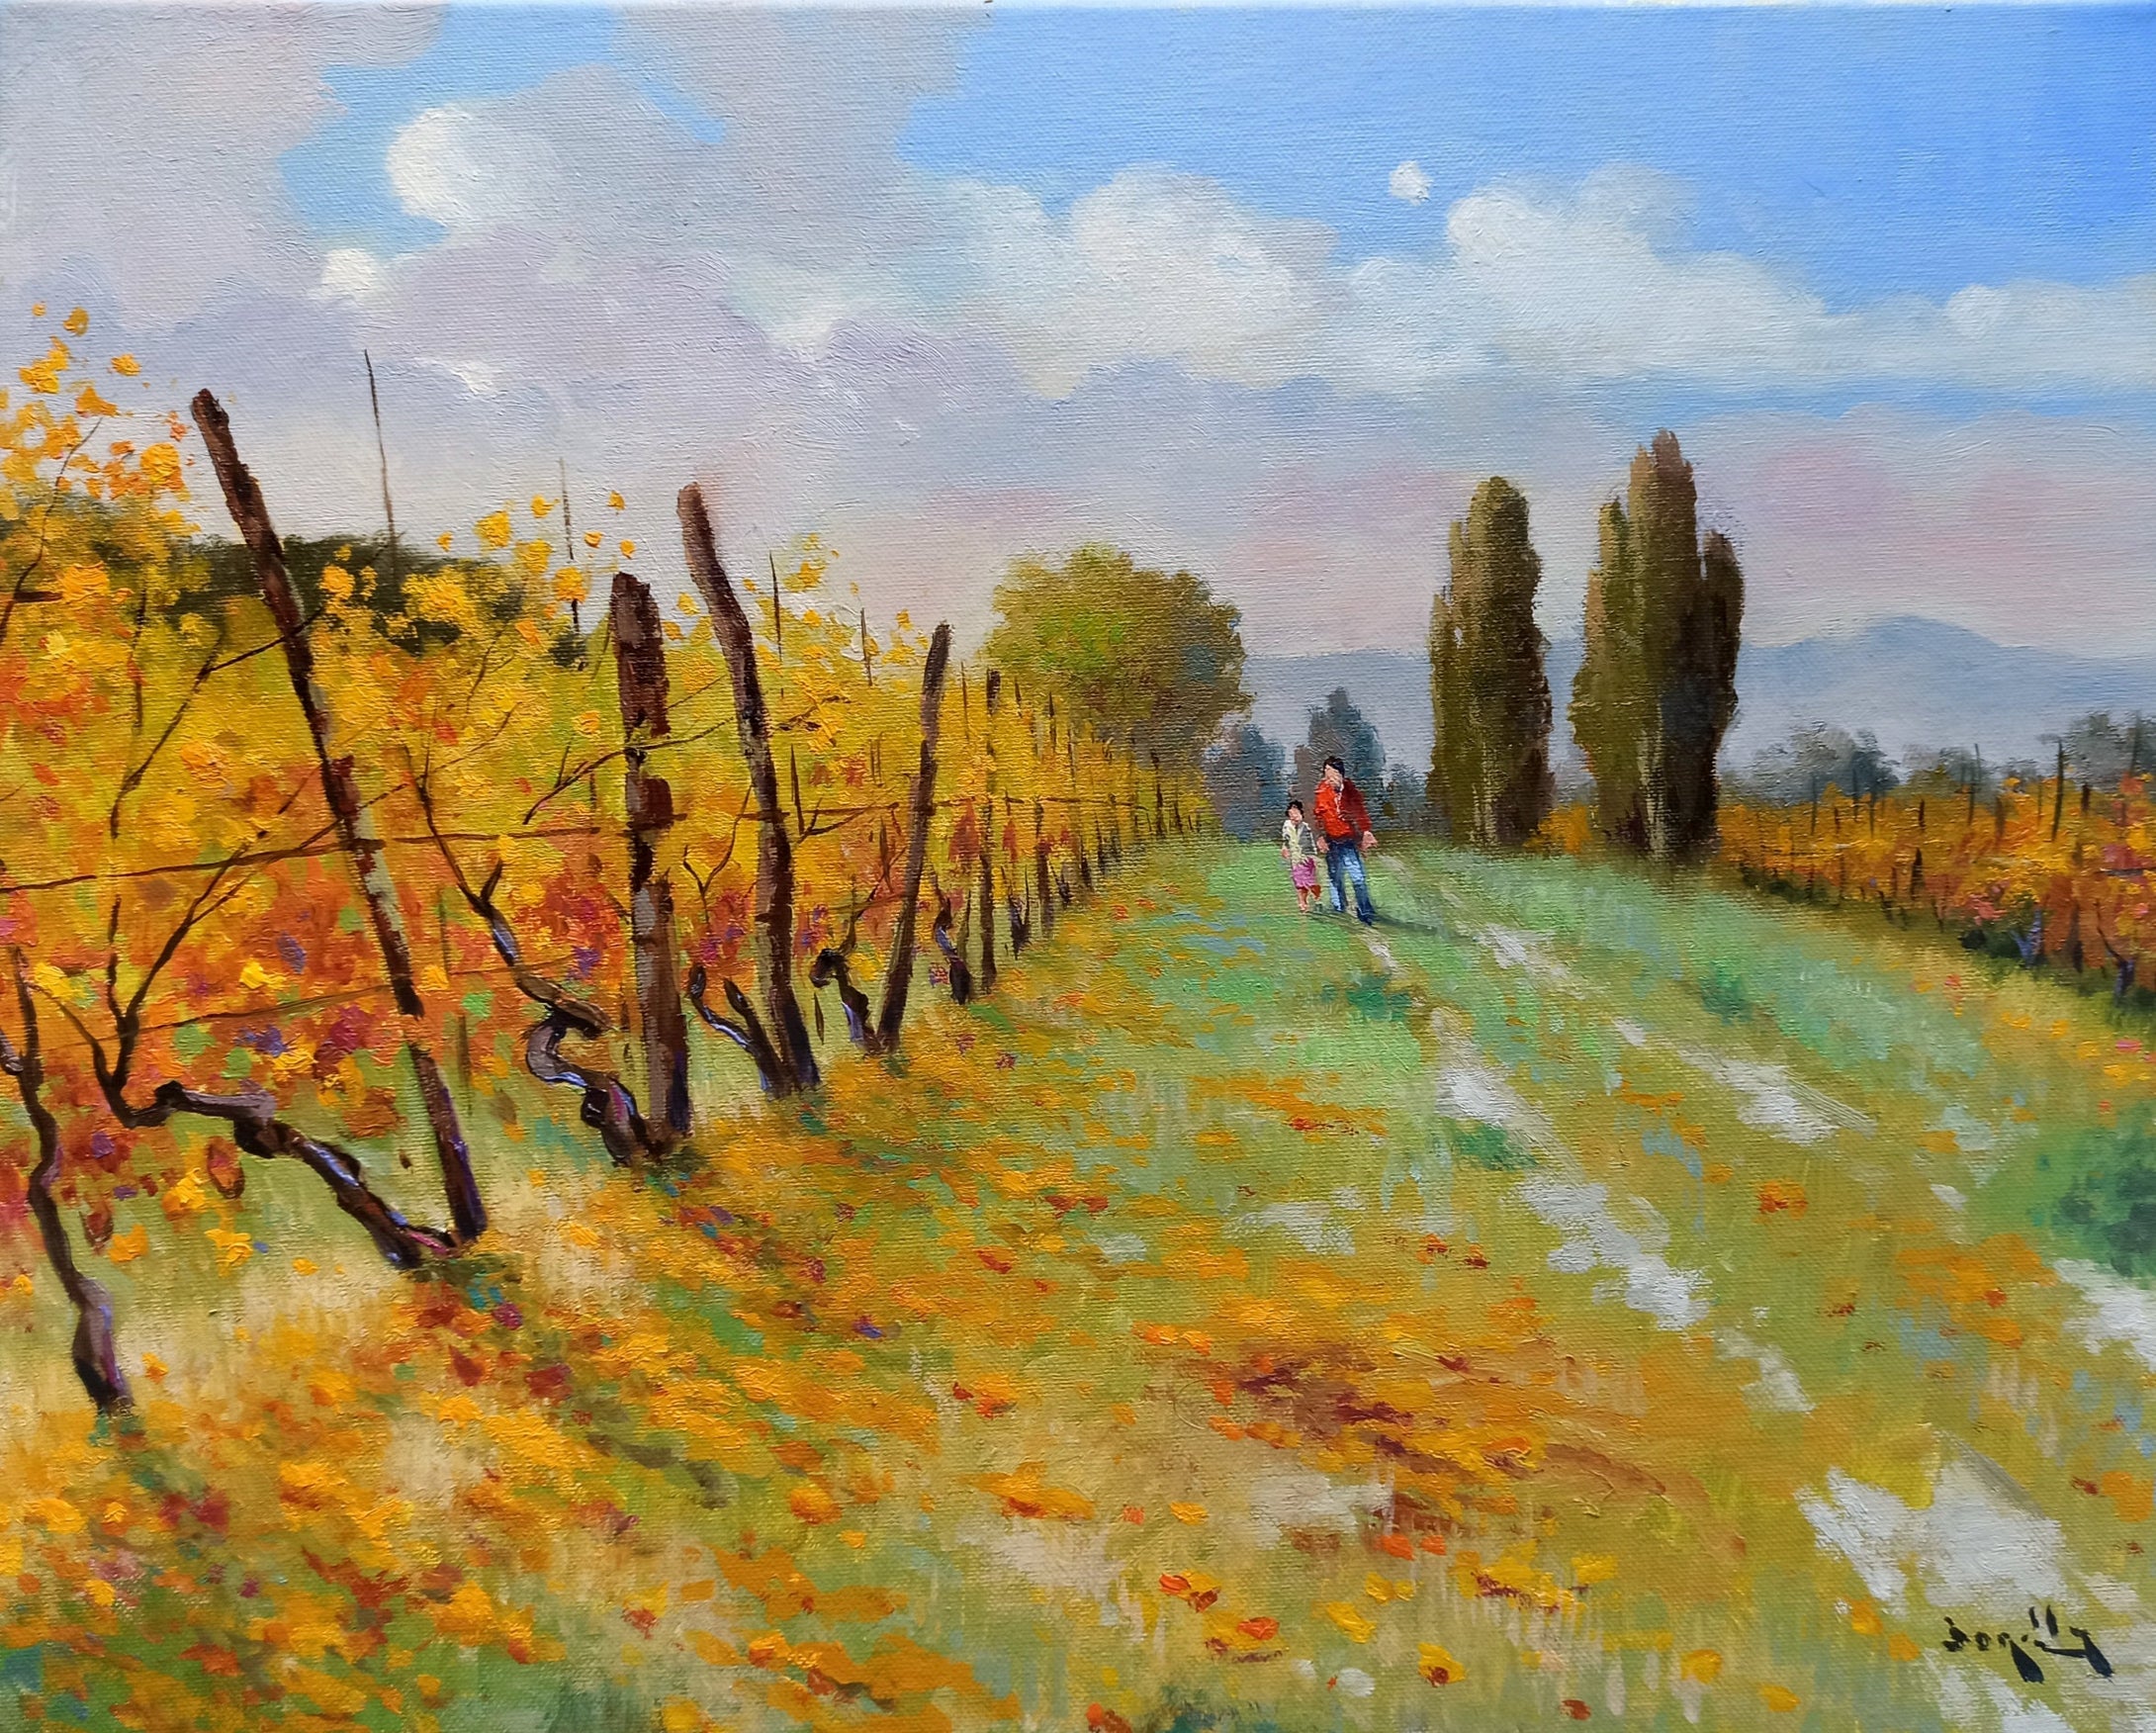 Painting Tuscany vineyard landscape 